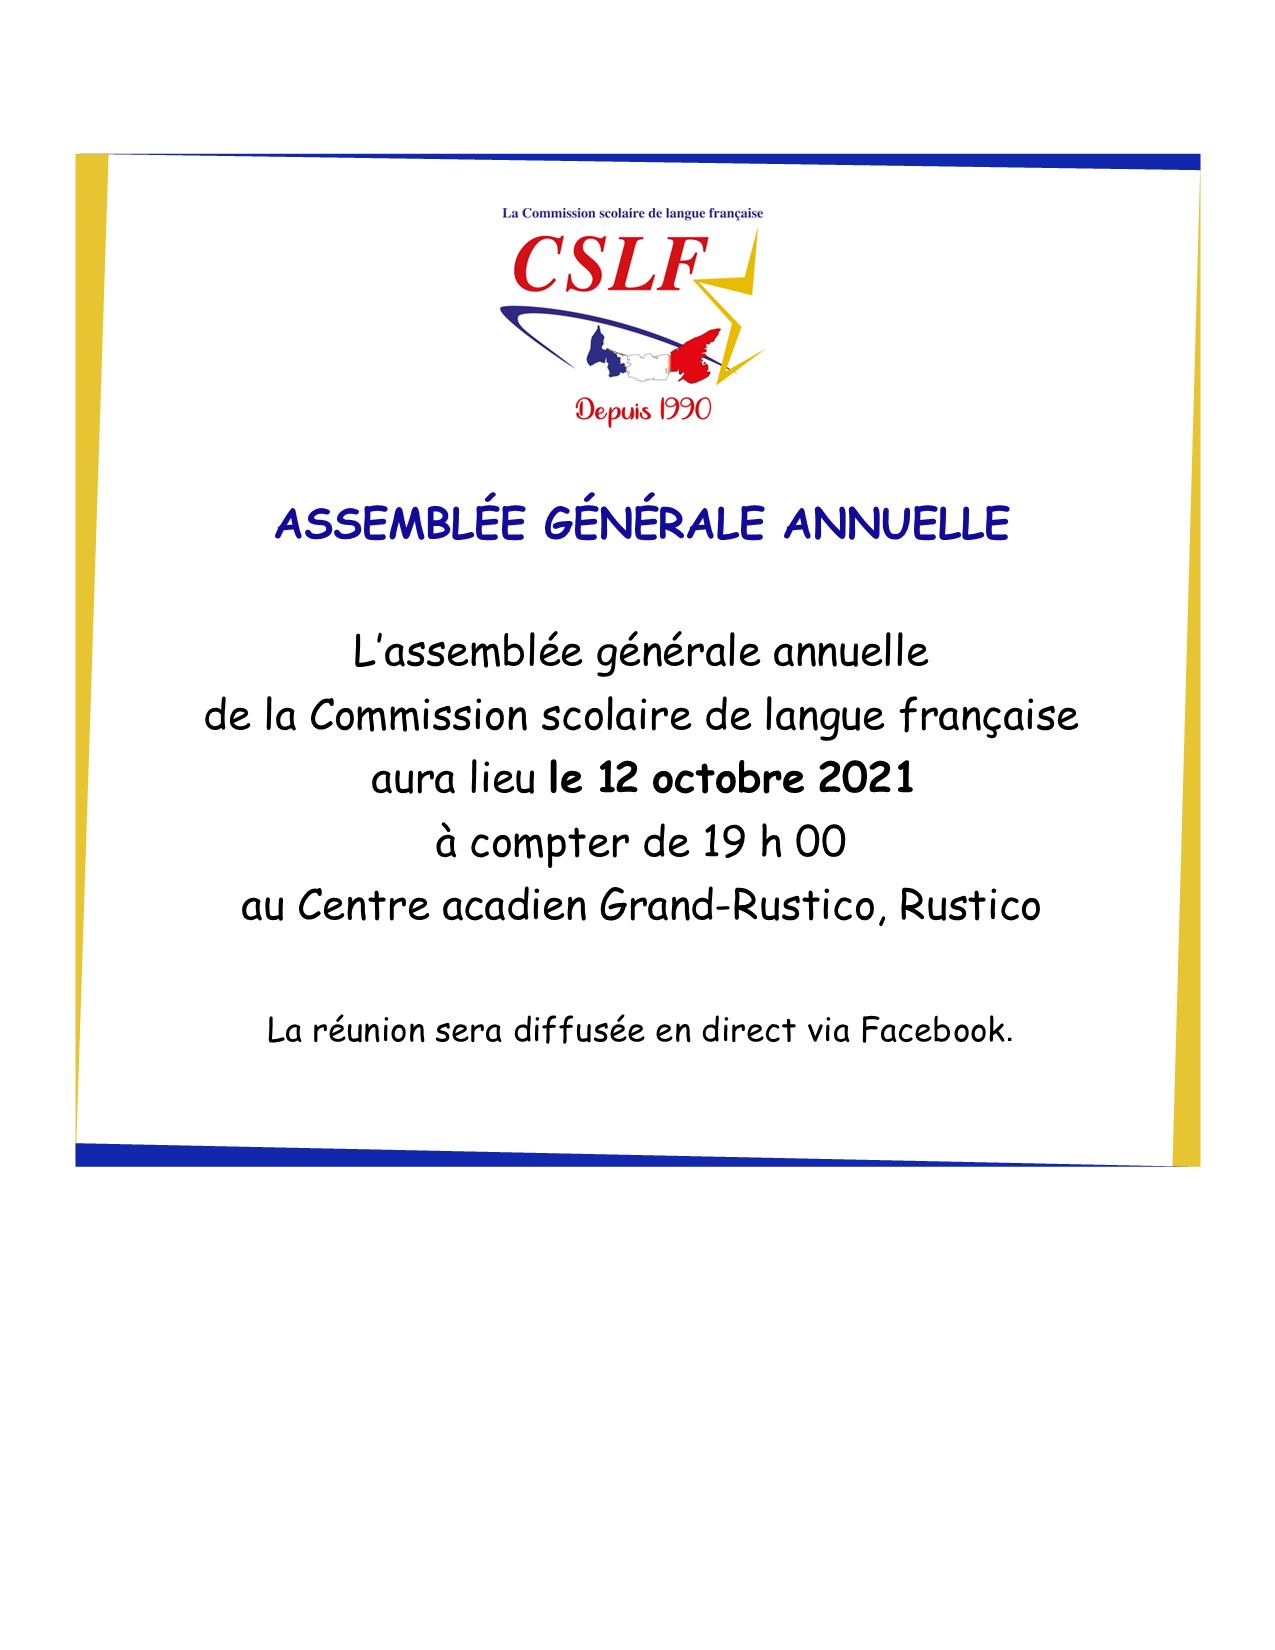 Assemblée générale annuelle de la CSLF